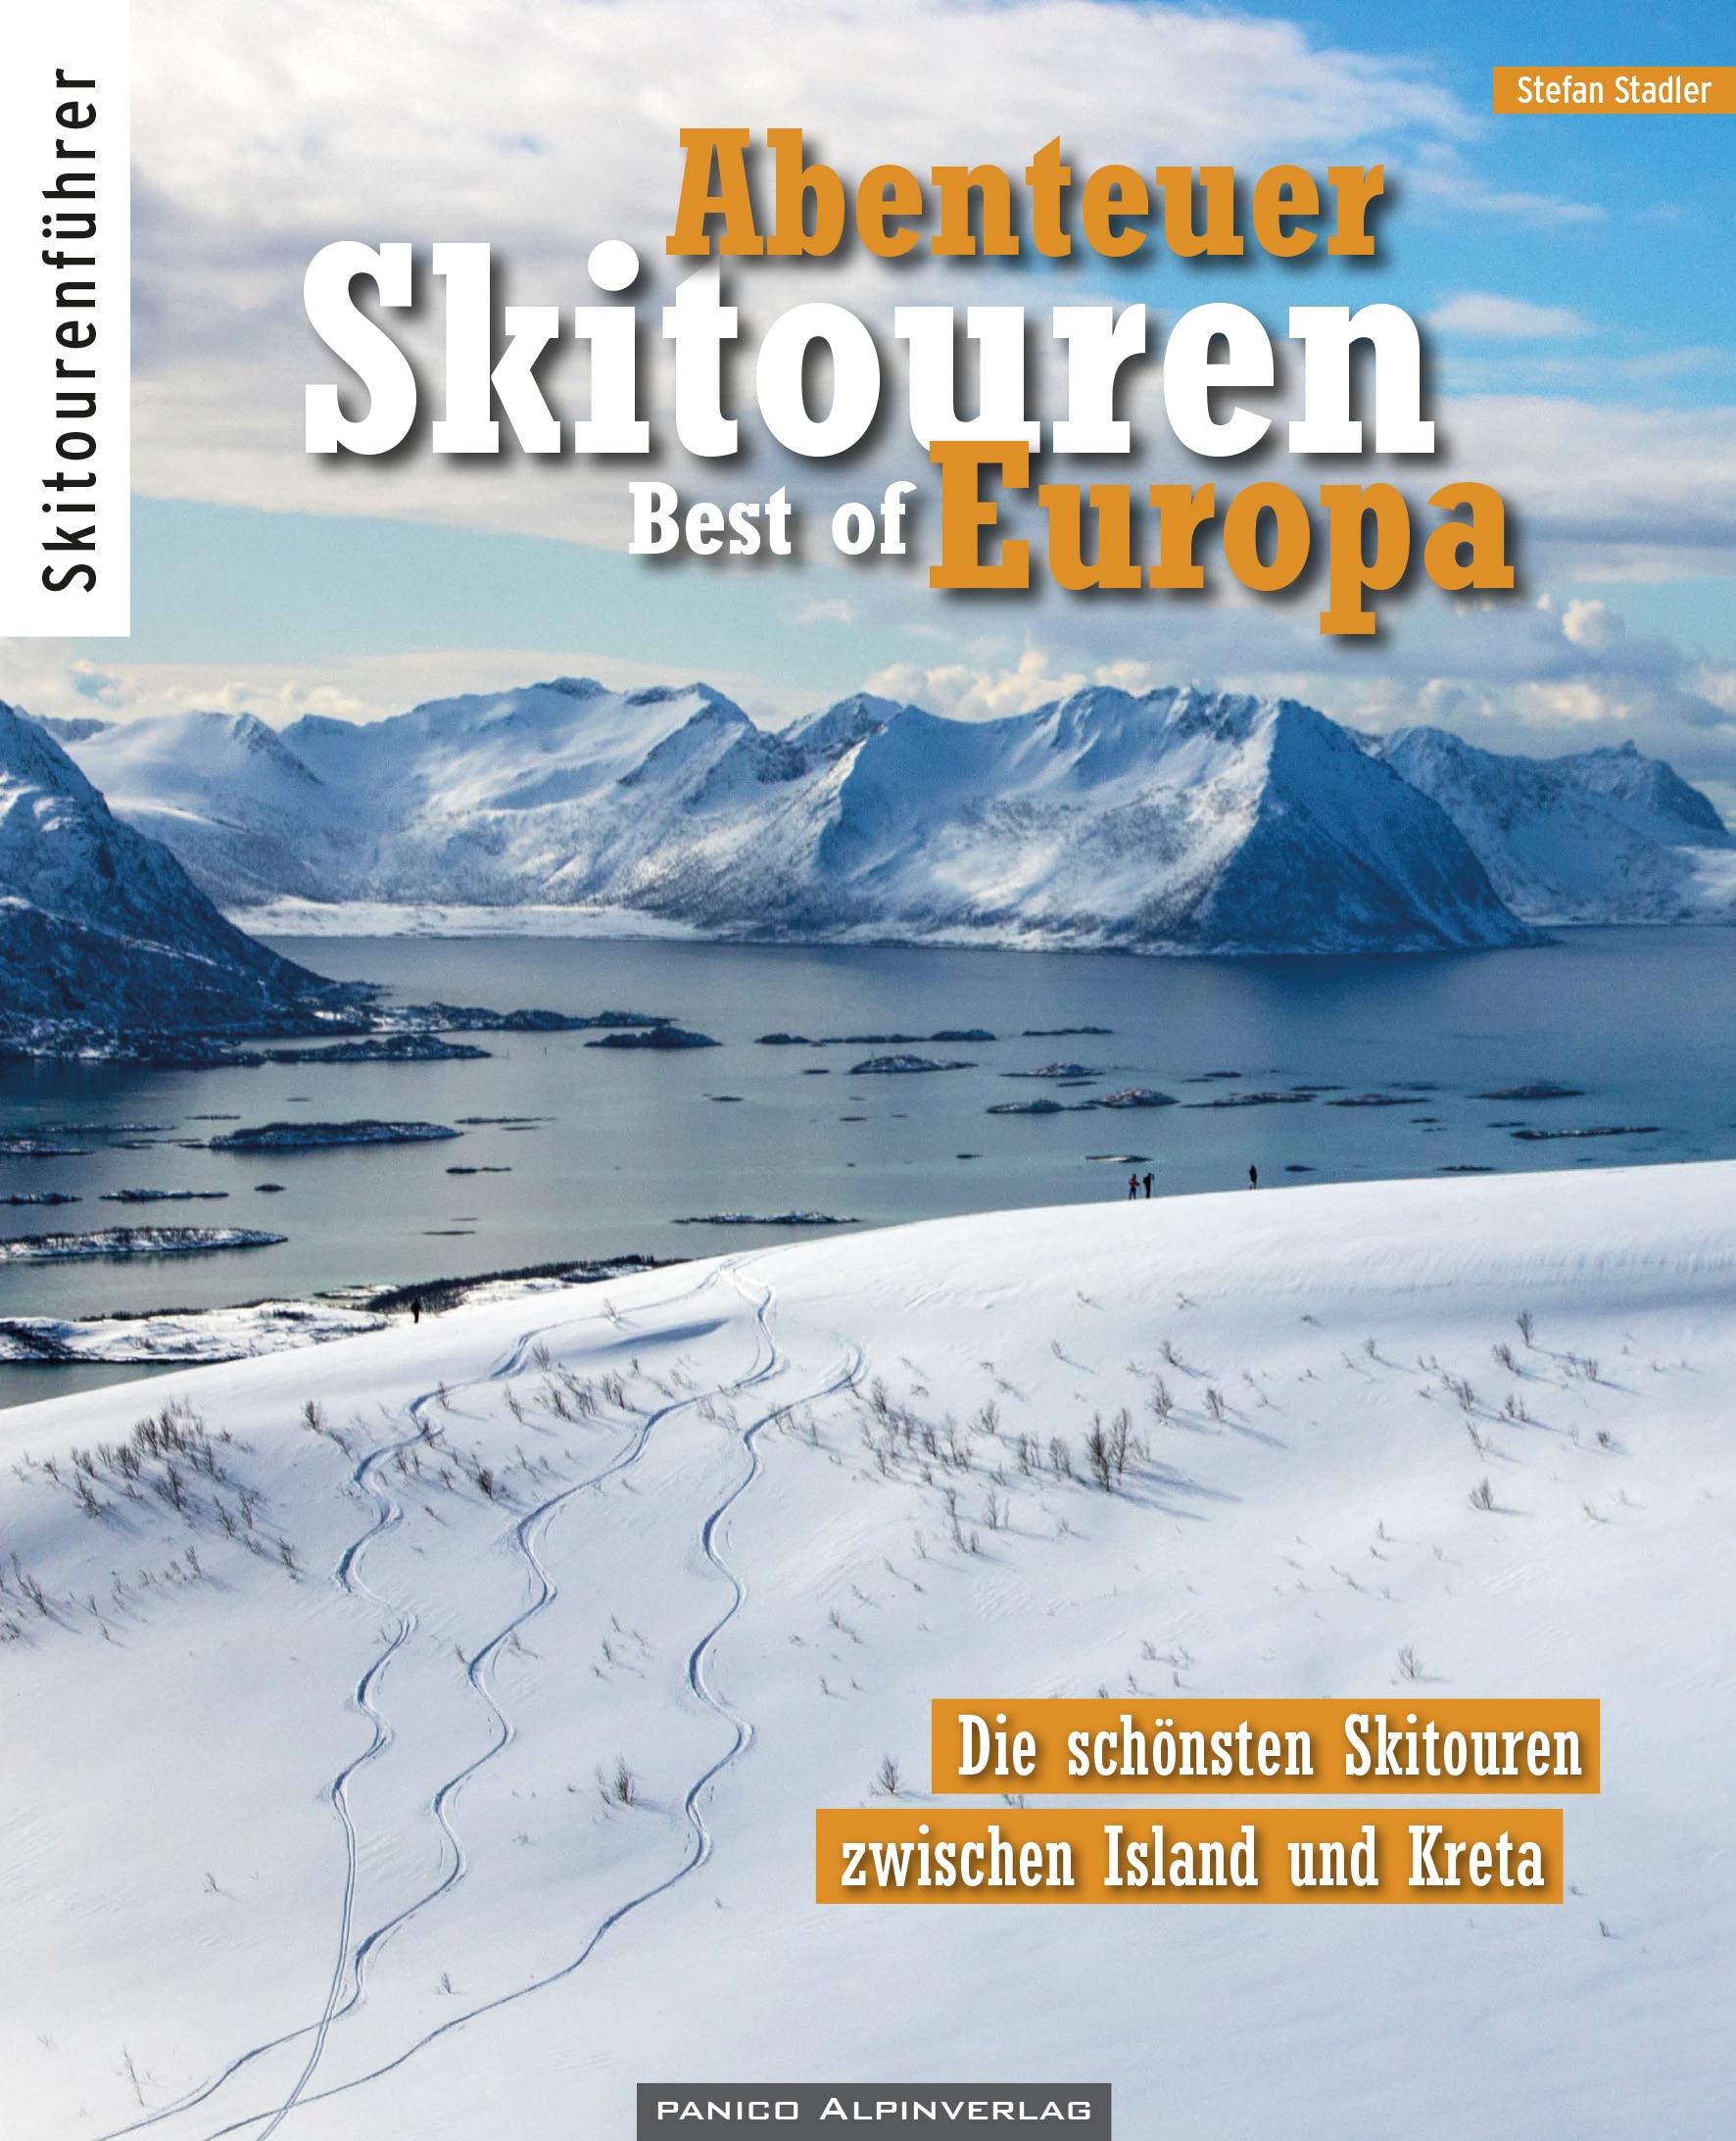 Der Skitourenführer „Abenteur Skitouren“ (39,80 €) ist im Panico Alpinverlag erschienen